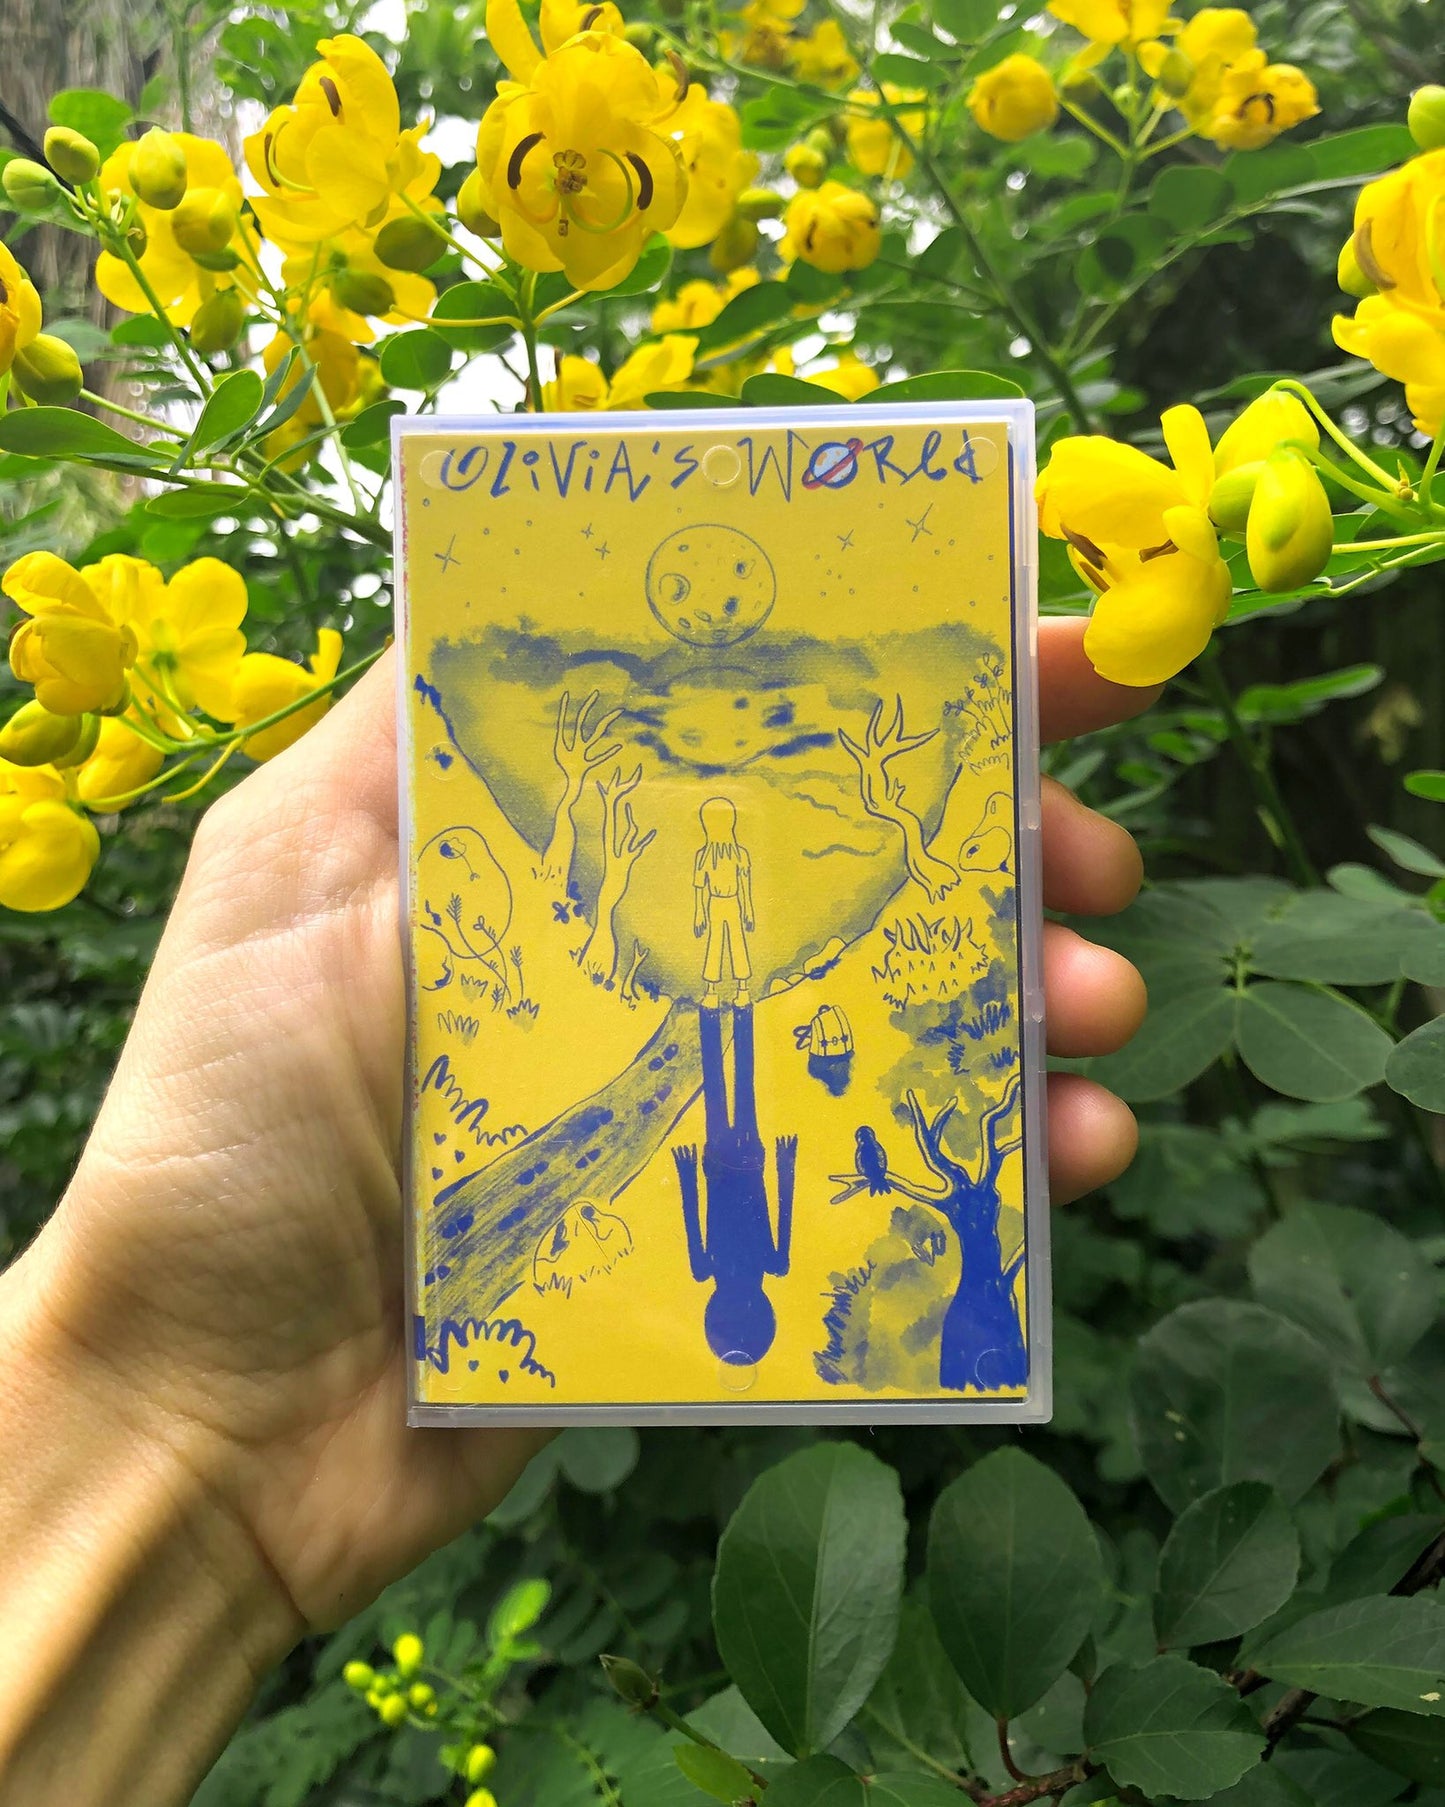 OLIVIA'S WORLD "Tuff 2B Tender EP" cassette tape